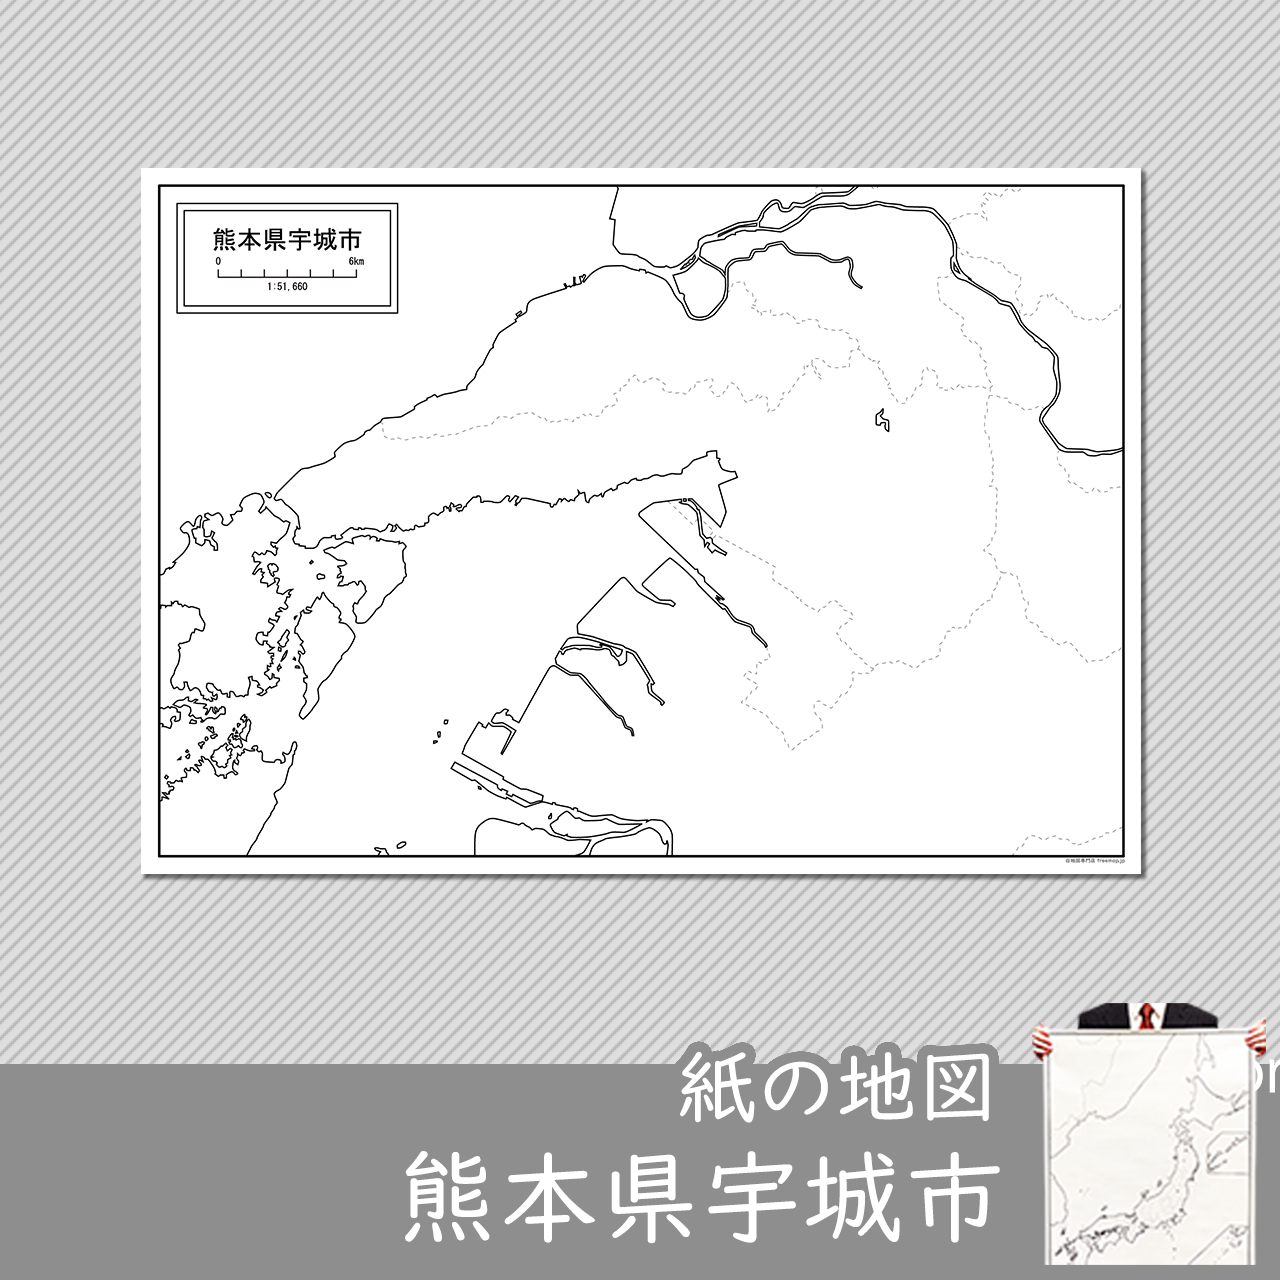 宇城市の紙の白地図